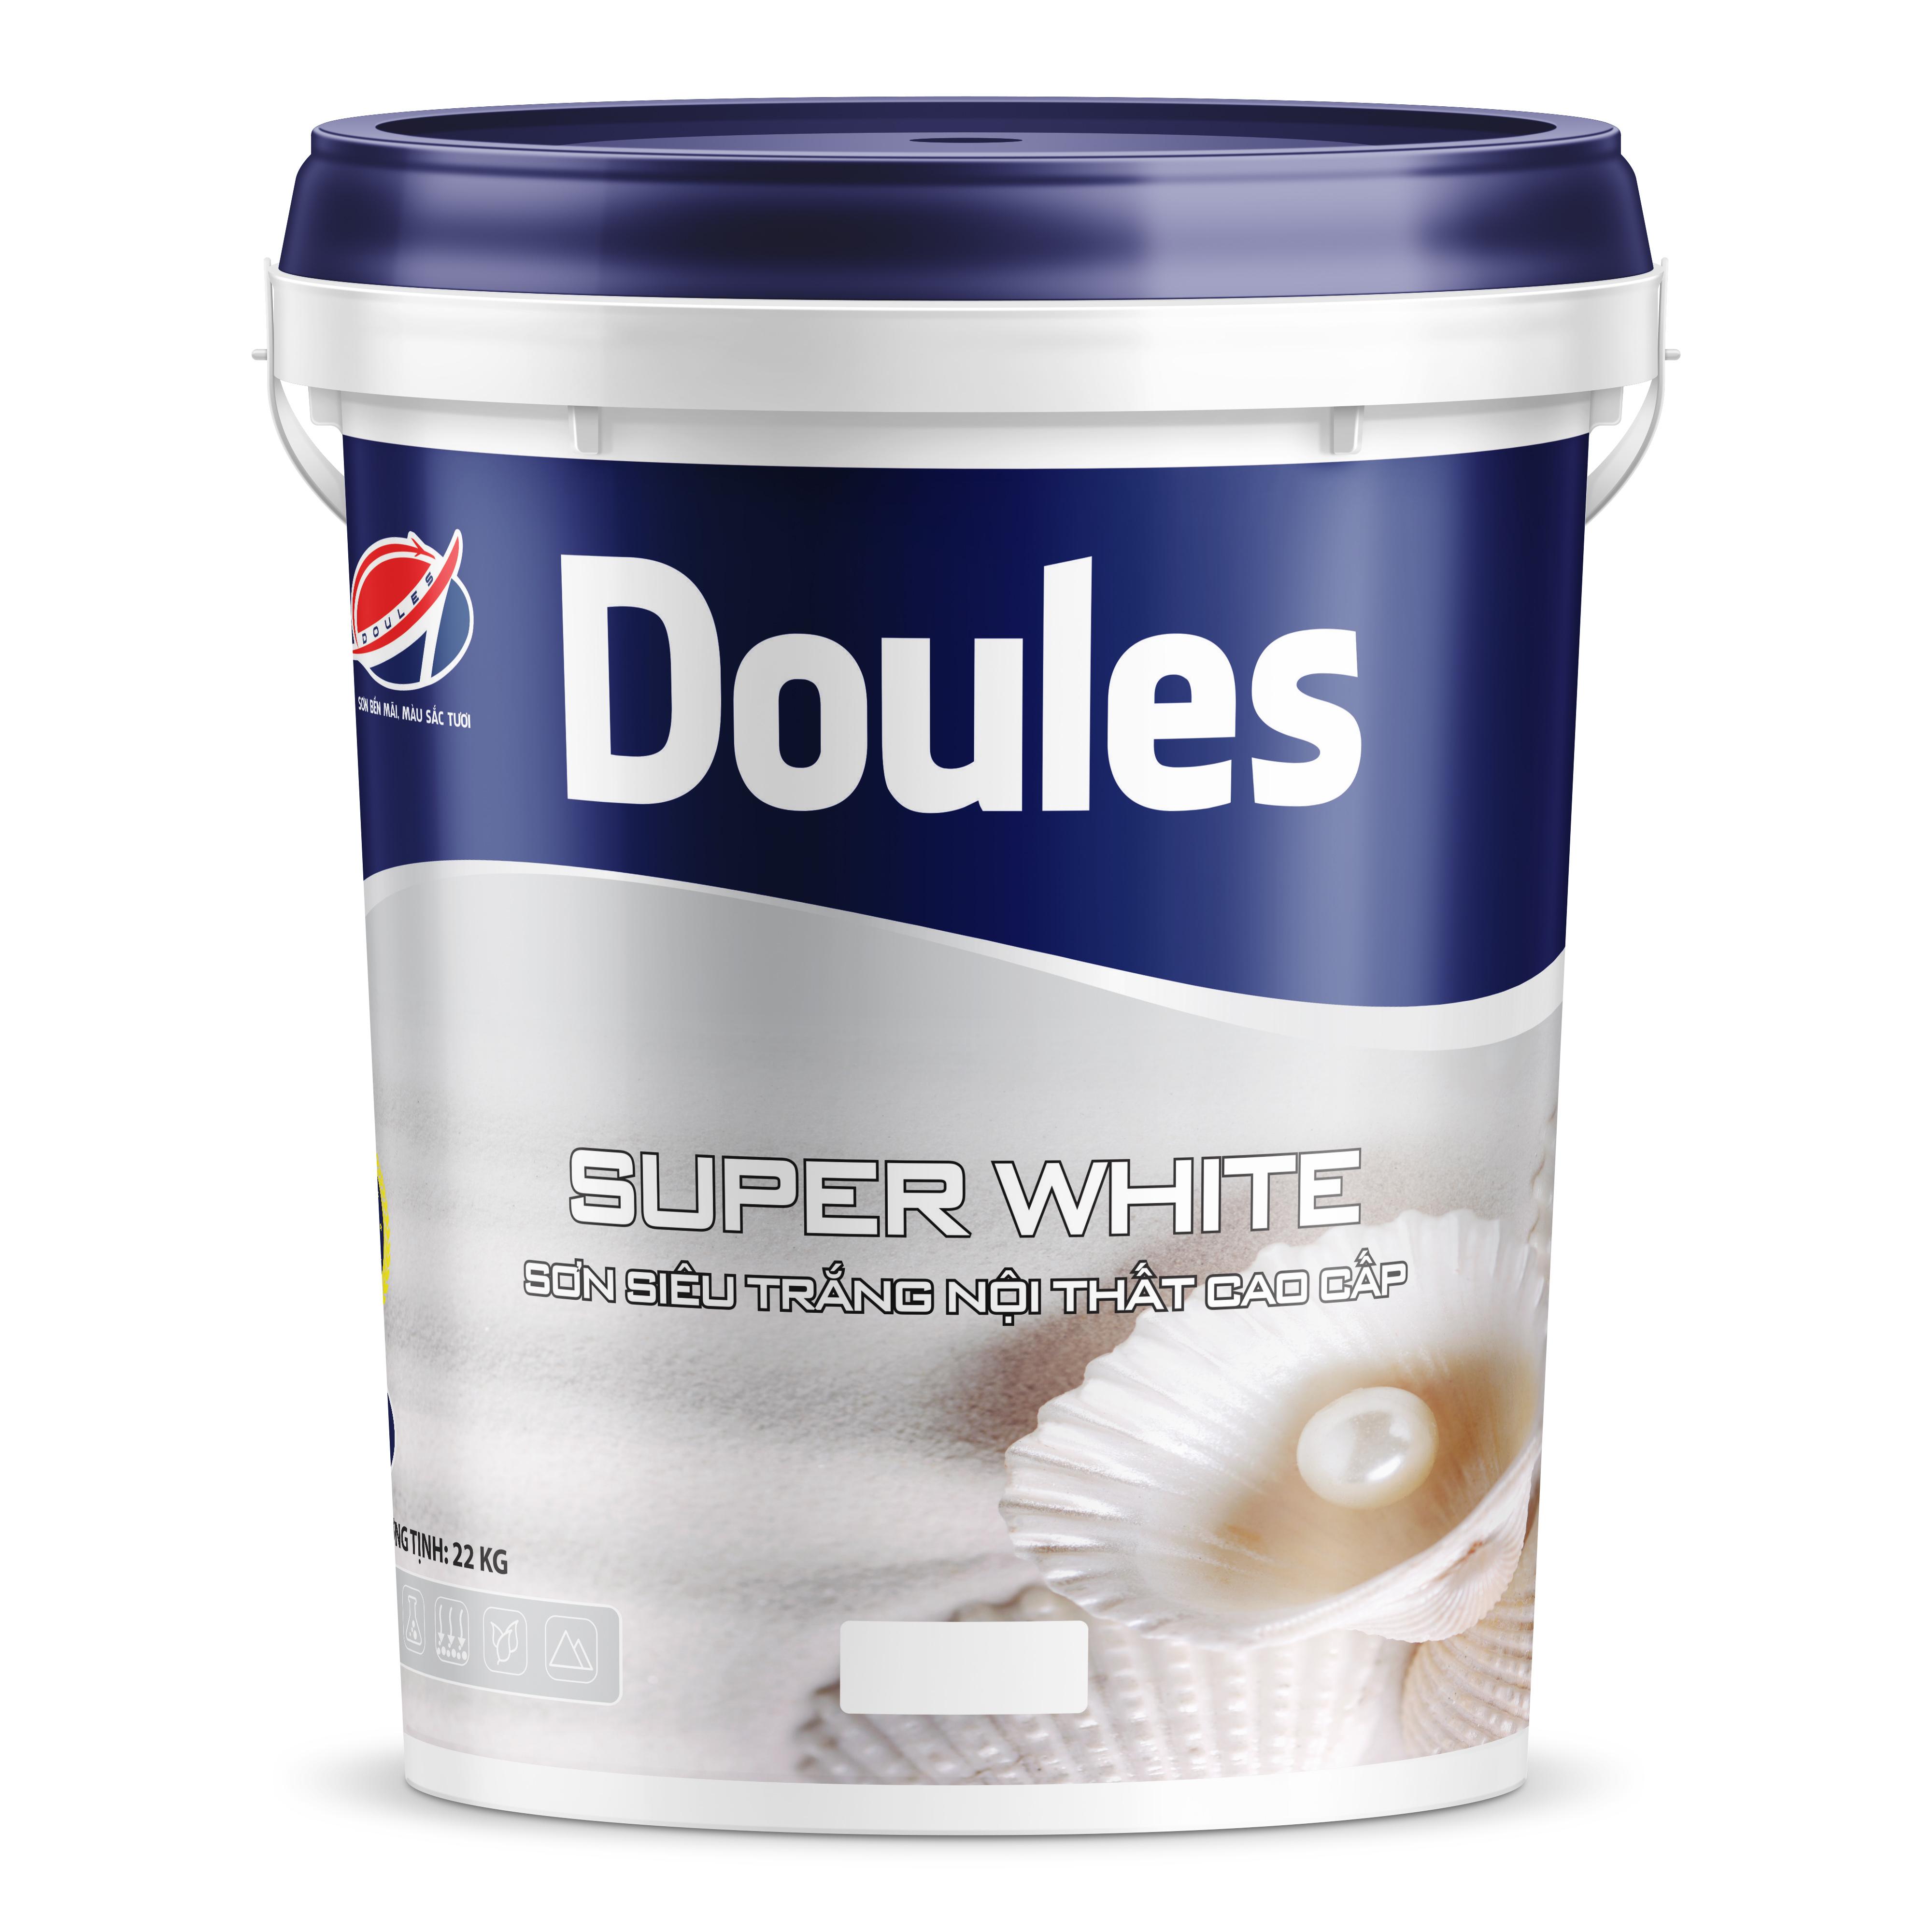 Sơn Doules Super White siêu trắng nội thất